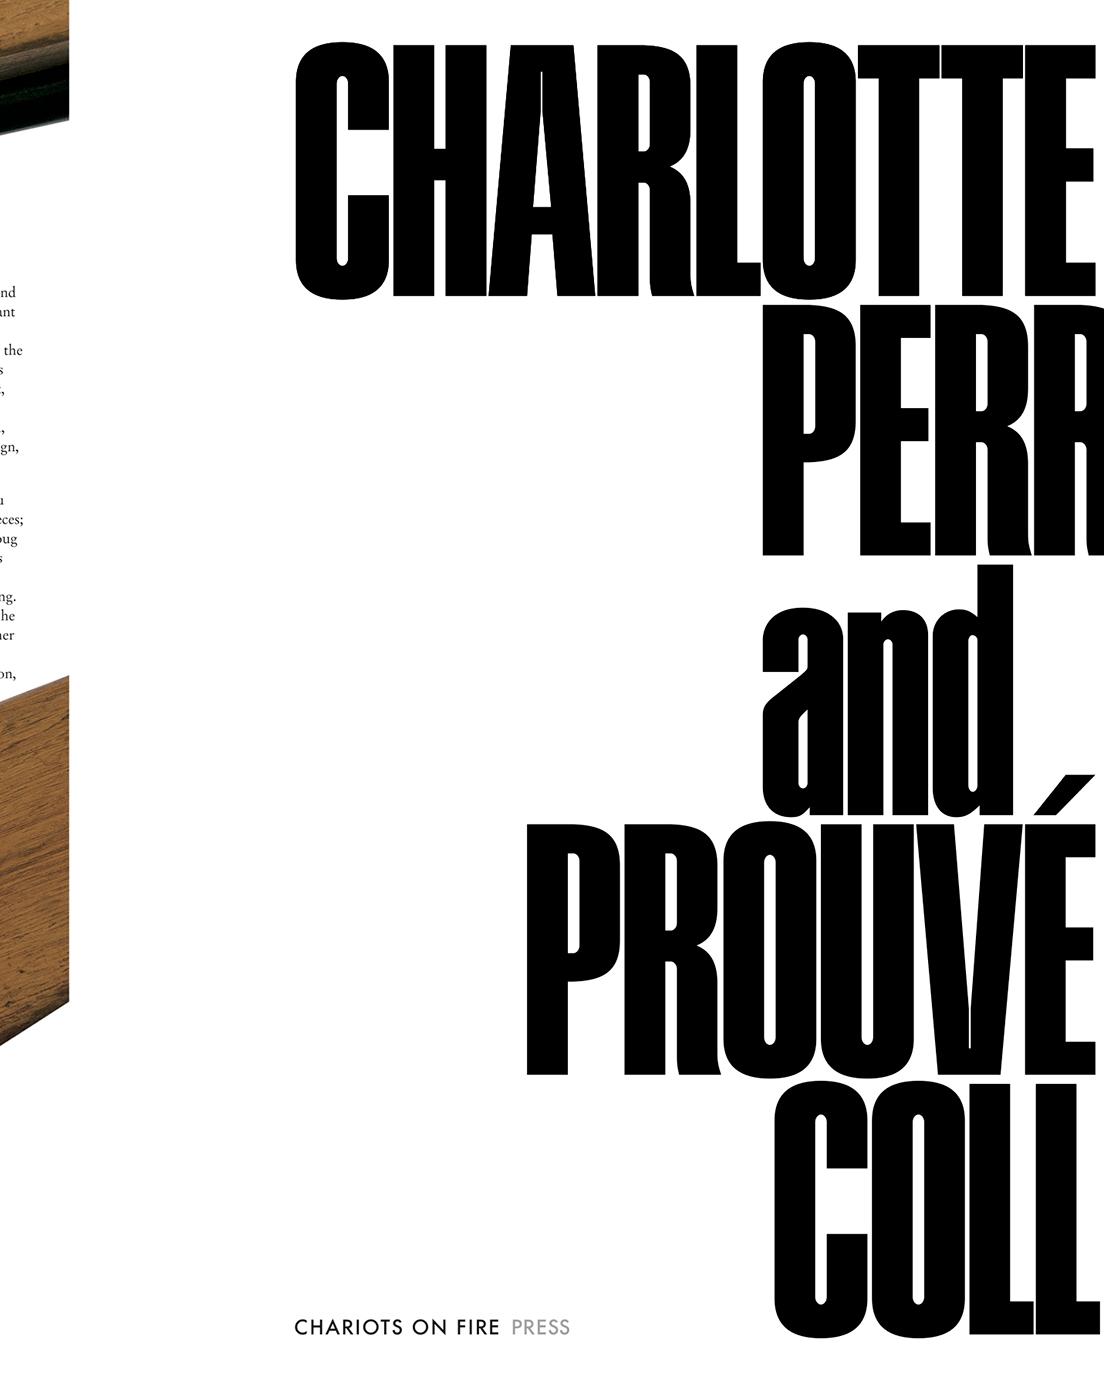 シャルロット・ペリアンは1903年、ジャン・プルーヴェは1901年、ともにフランス生まれ。それぞれデザイナーとして活躍したが、コラボレーションから生まれた名作も多かった。